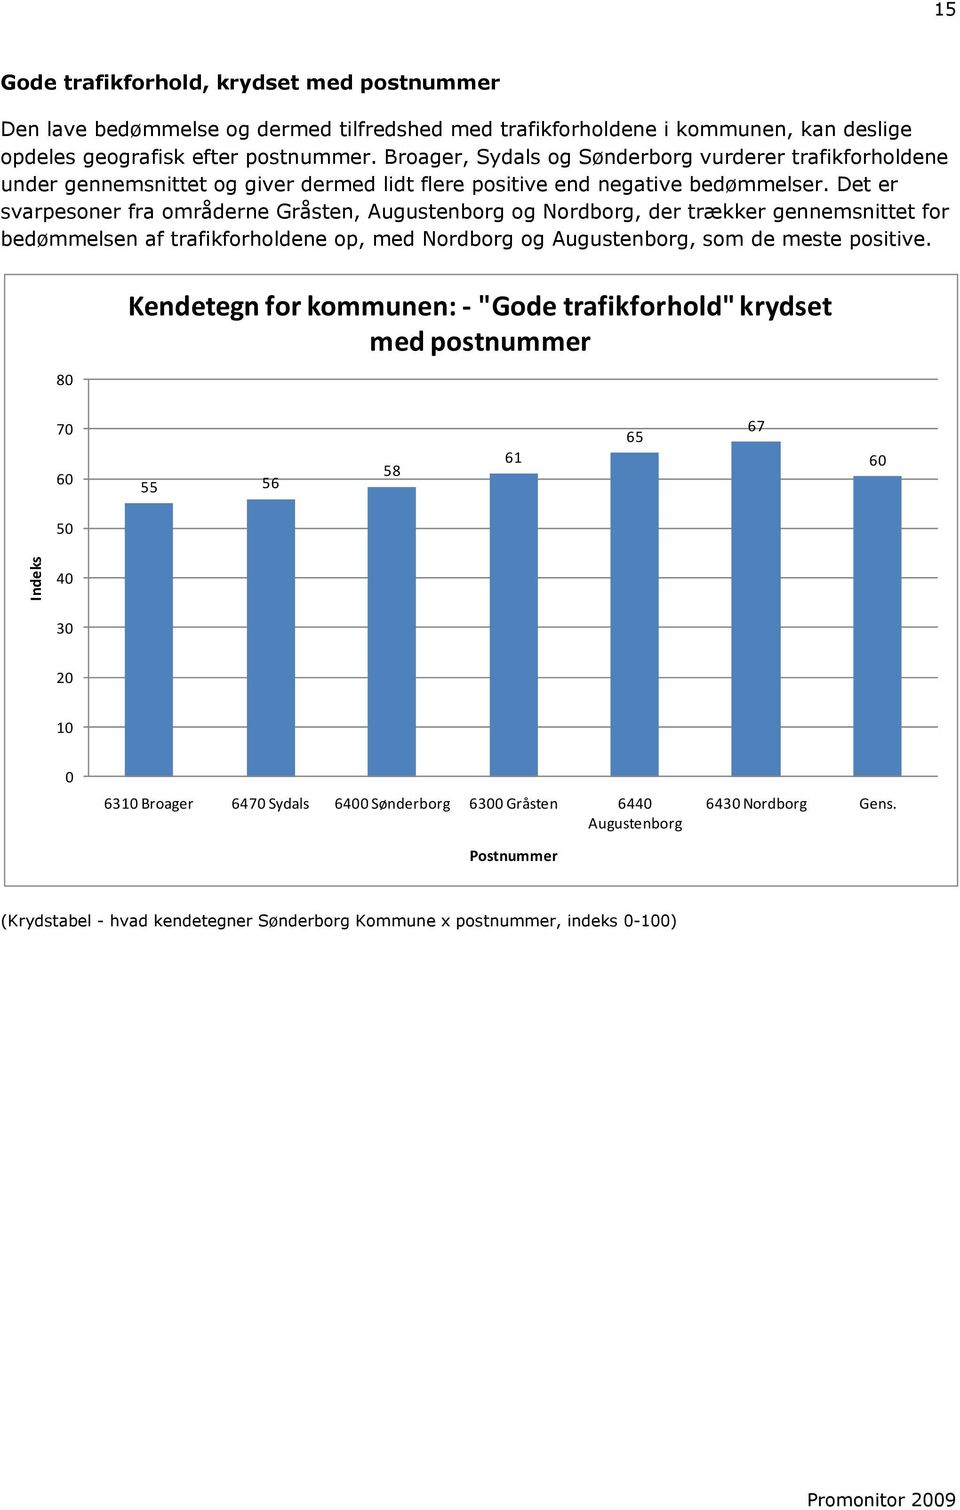 Det er svarpesoner fra områderne Gråsten, Augustenborg og Nordborg, der trækker gennemsnittet for bedømmelsen af trafikforholdene op, med Nordborg og Augustenborg, som de meste positive.